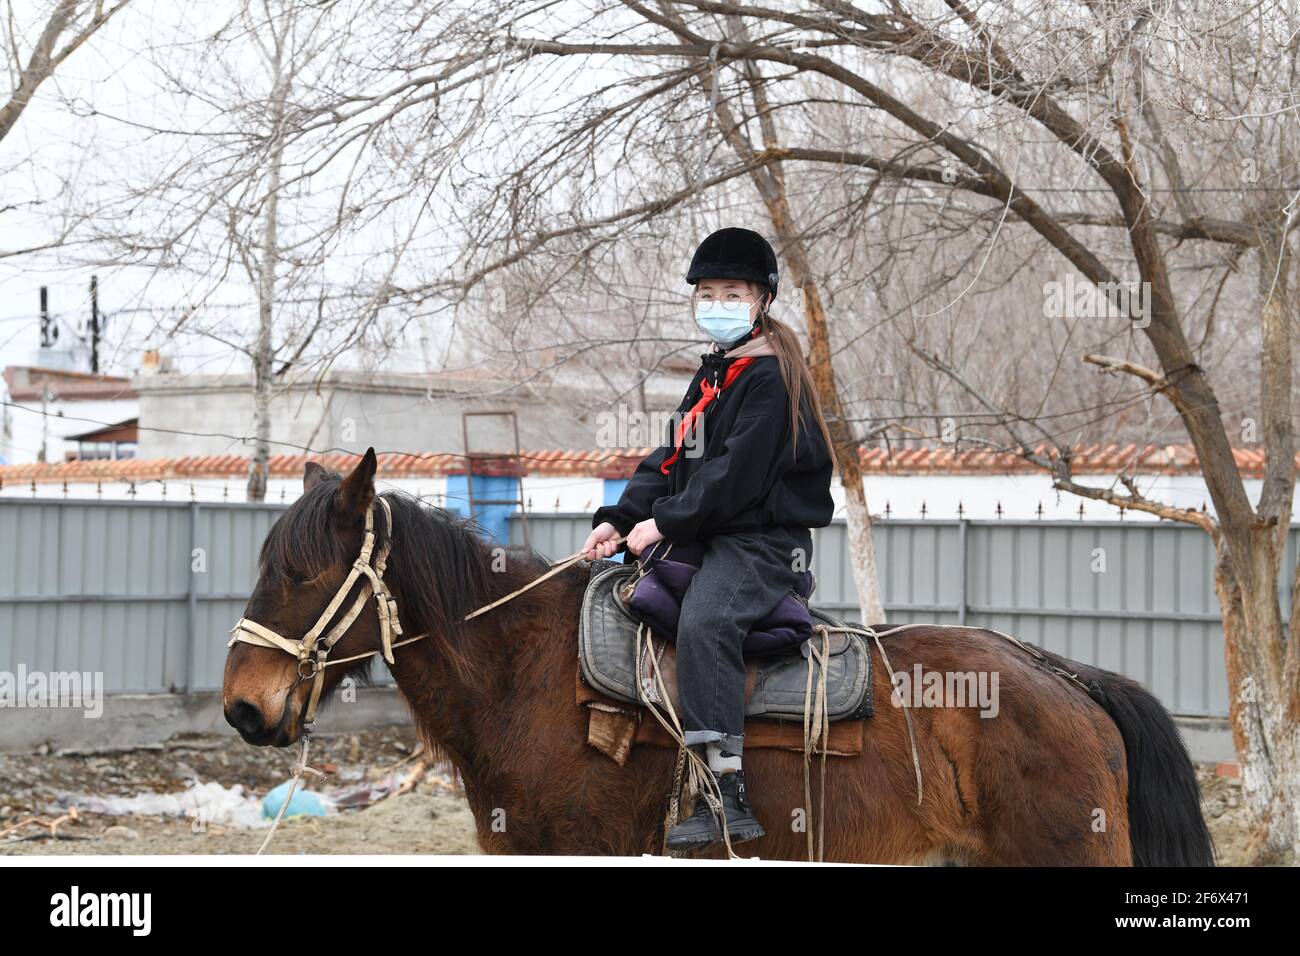 (210403) -- BURQIN, 3 aprile 2021 (Xinhua) -- Parizat Jinges, un allievo di grado senventesimo della scuola di imbarco di Oymak, cavalca su un cavallo durante una classe equestre nella contea di Burqin, regione autonoma di Xinjiang Uygur della Cina nord-occidentale, 29 marzo 2021. La gente nella regione autonoma di Xinjiang Uygur ha una tradizione di allevamento di cavalli e di equitazione. La scuola di imbarco di Oymak ha cominciato ad offrire le classi equestri alla fine del 2019. Gli studenti, la maggior parte dei quali provengono da famiglie di pastori, imparano sia la conoscenza teorica che la pratica di equitazione sulle classi equestri. Dopo le lezioni, gli studenti si rafforzano fisicamente e lov Foto Stock